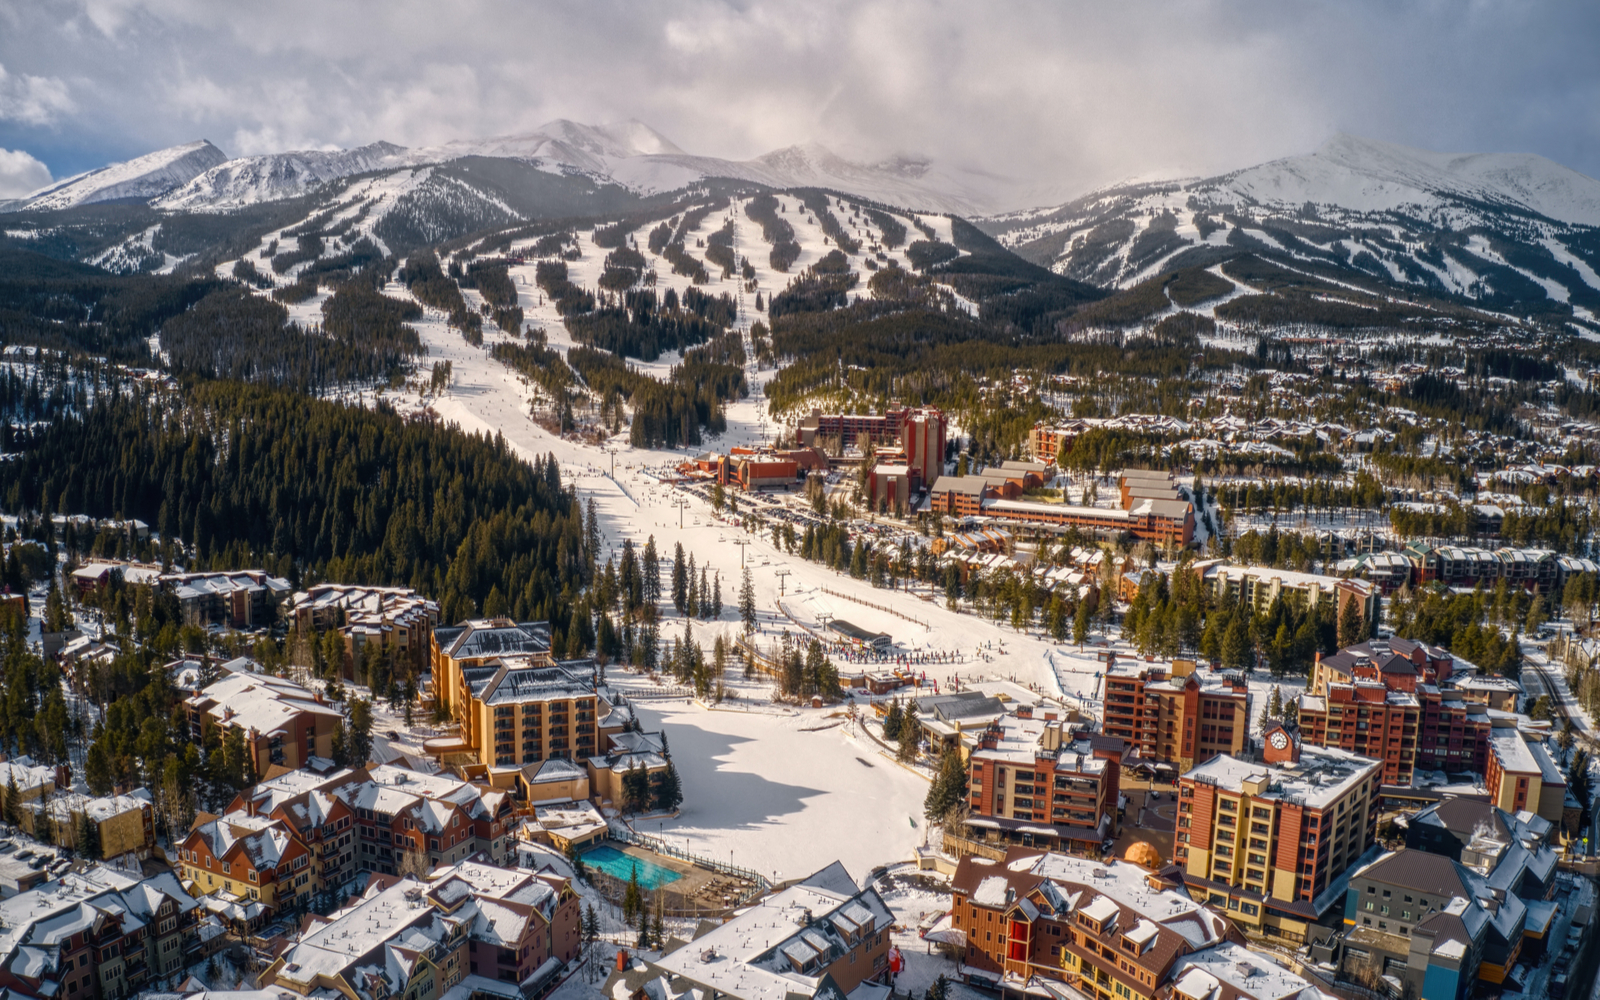 14 Best Ski Resorts Near Denver in 2022